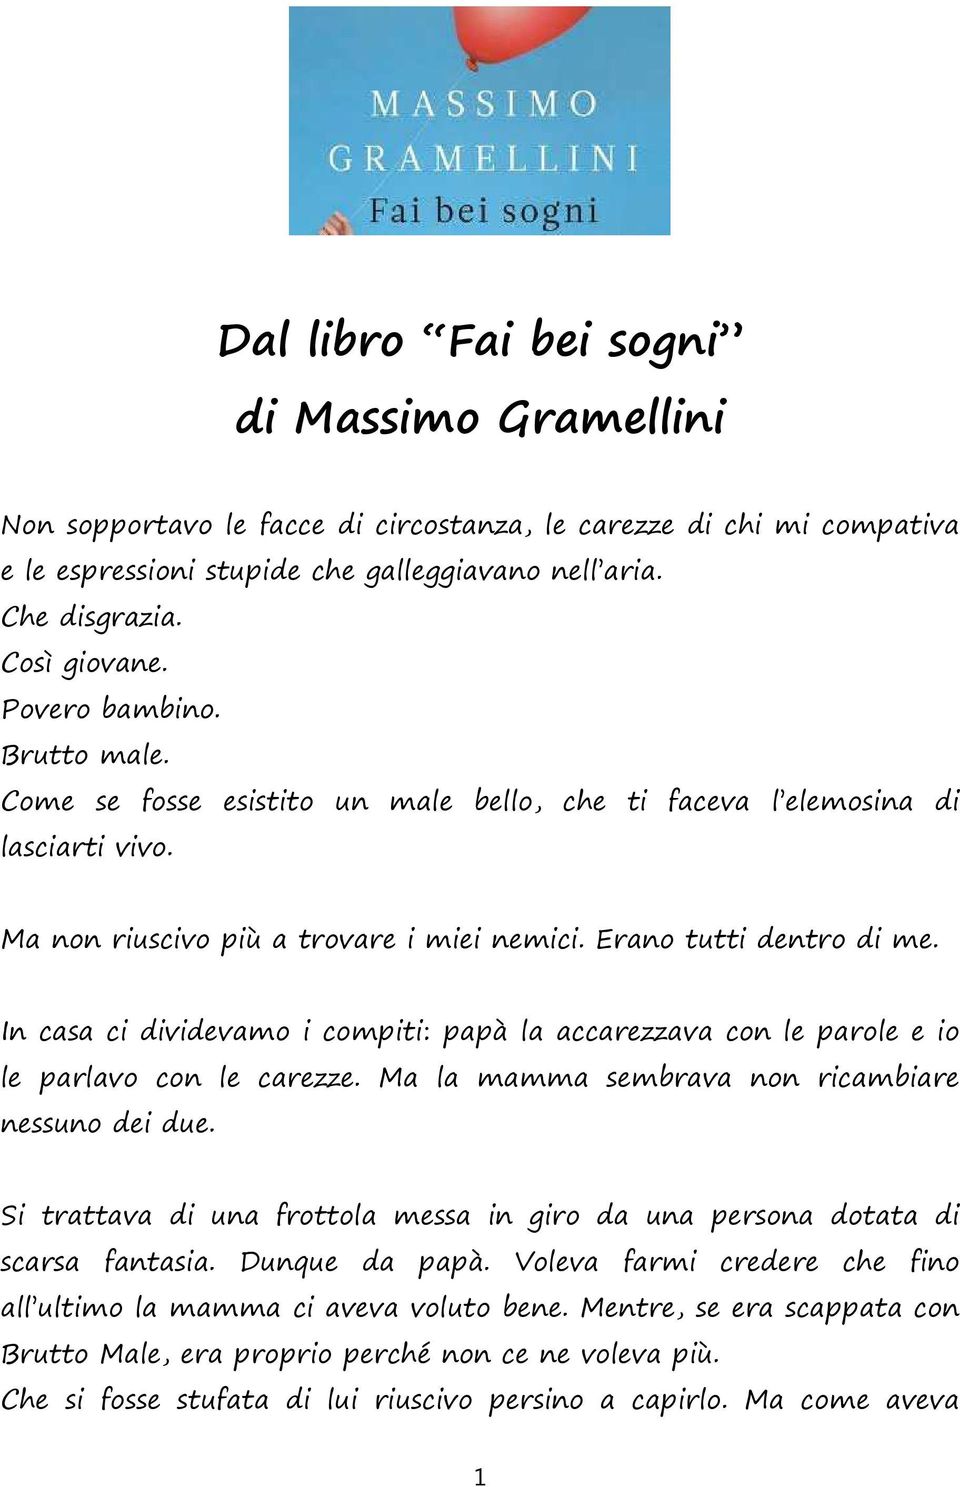 Dal Libro Fai Bei Sogni Di Massimo Gramellini Pdf Free Download